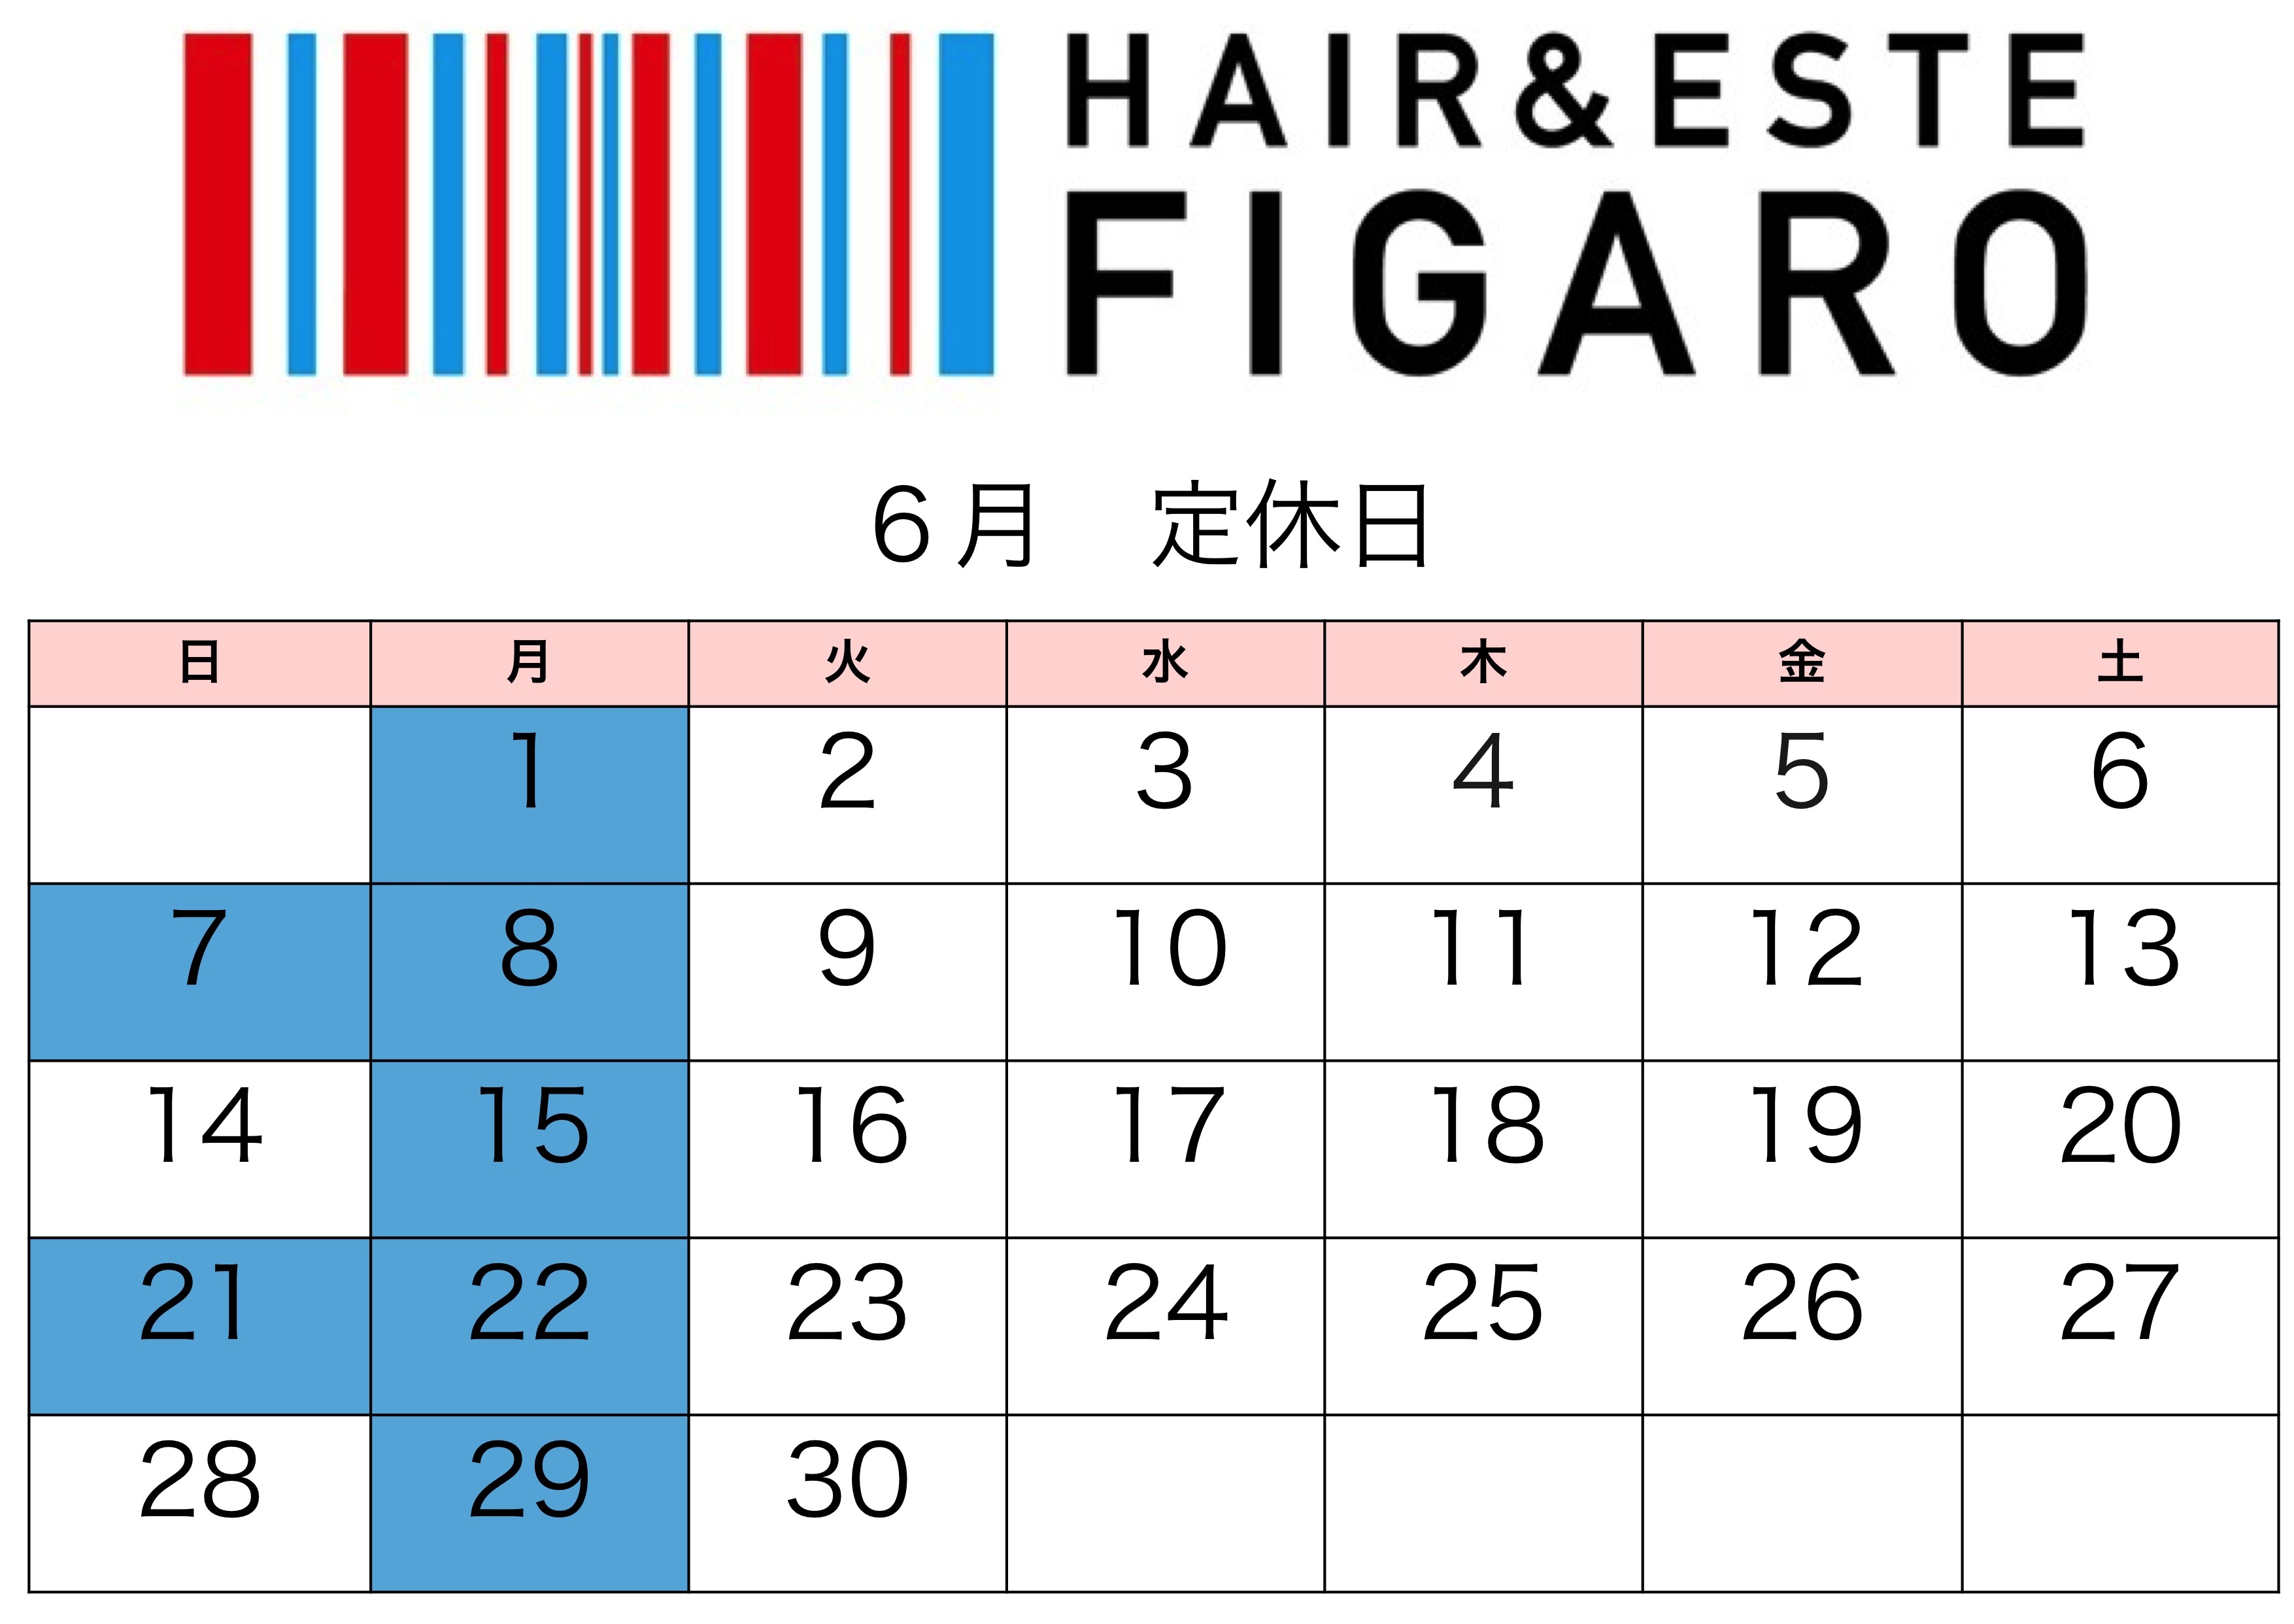 http://figaro-hair.com/blog/%E5%AE%9A%E4%BC%91%E6%97%A5%EF%BC%96jpg.jpg